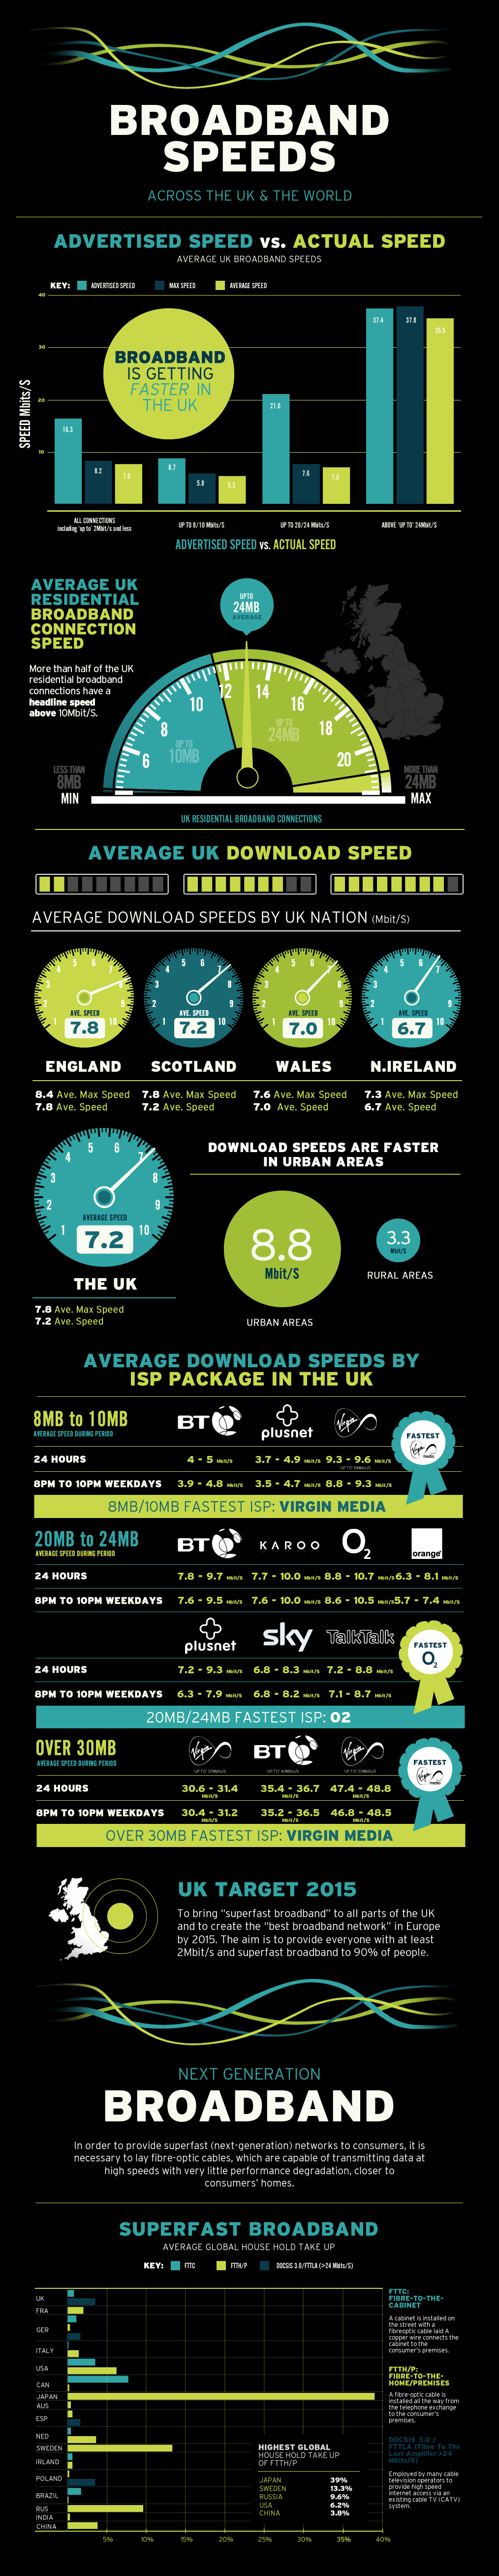 UK Broadband Statistics 2012